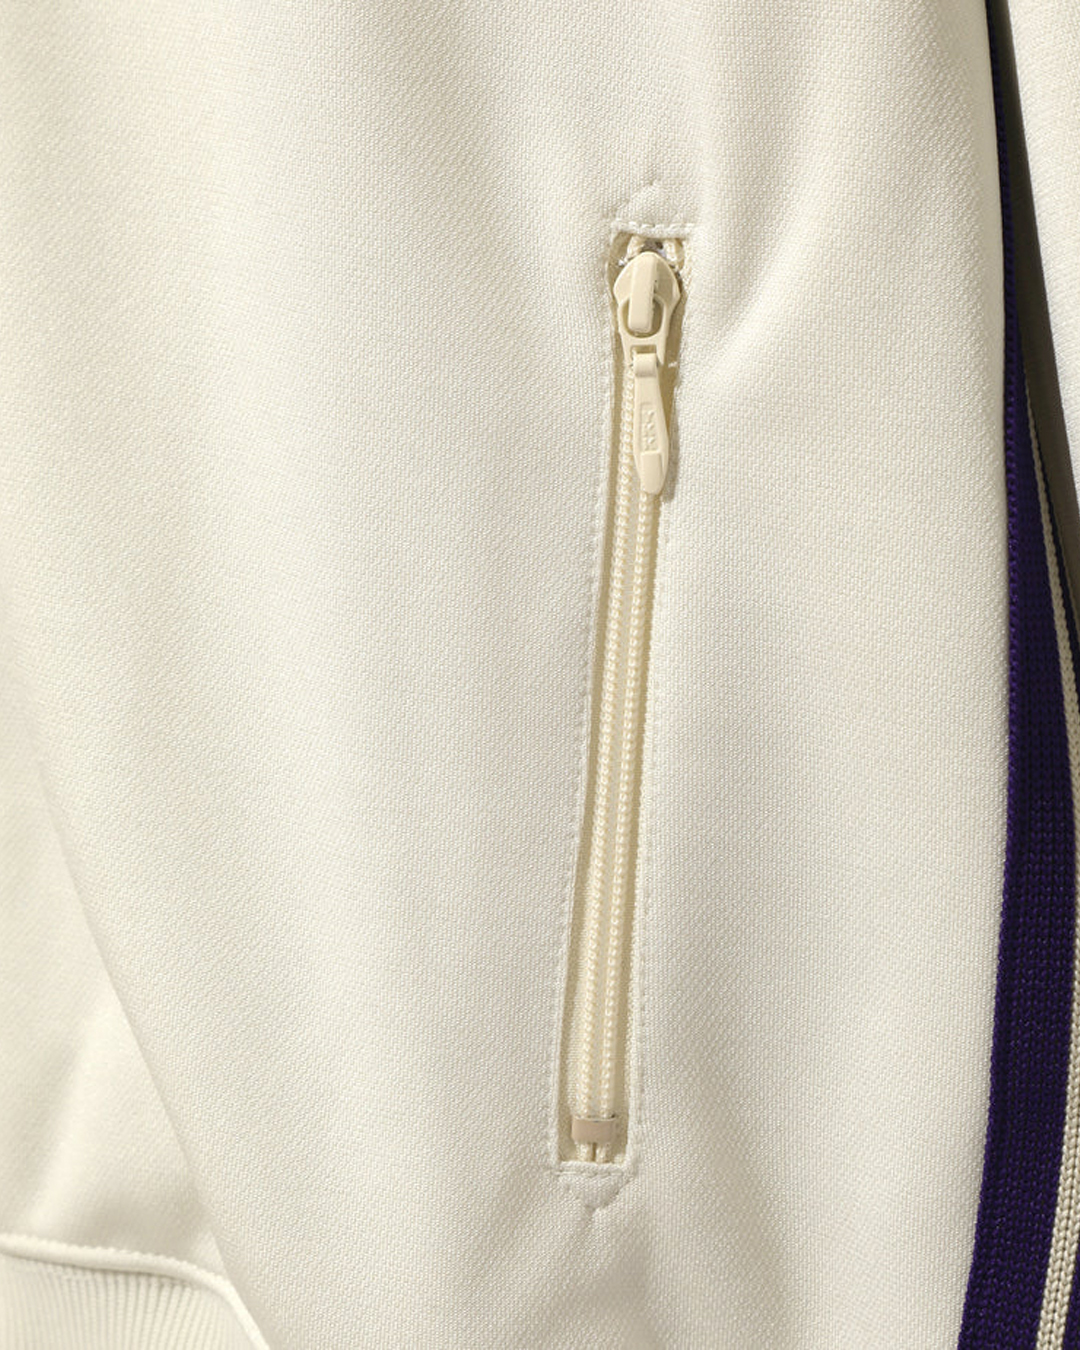 Jacket Adidas M Navy Blue Orange and White Sleeve Back Logo Track Jack –  Free Society Fashion Private Limited